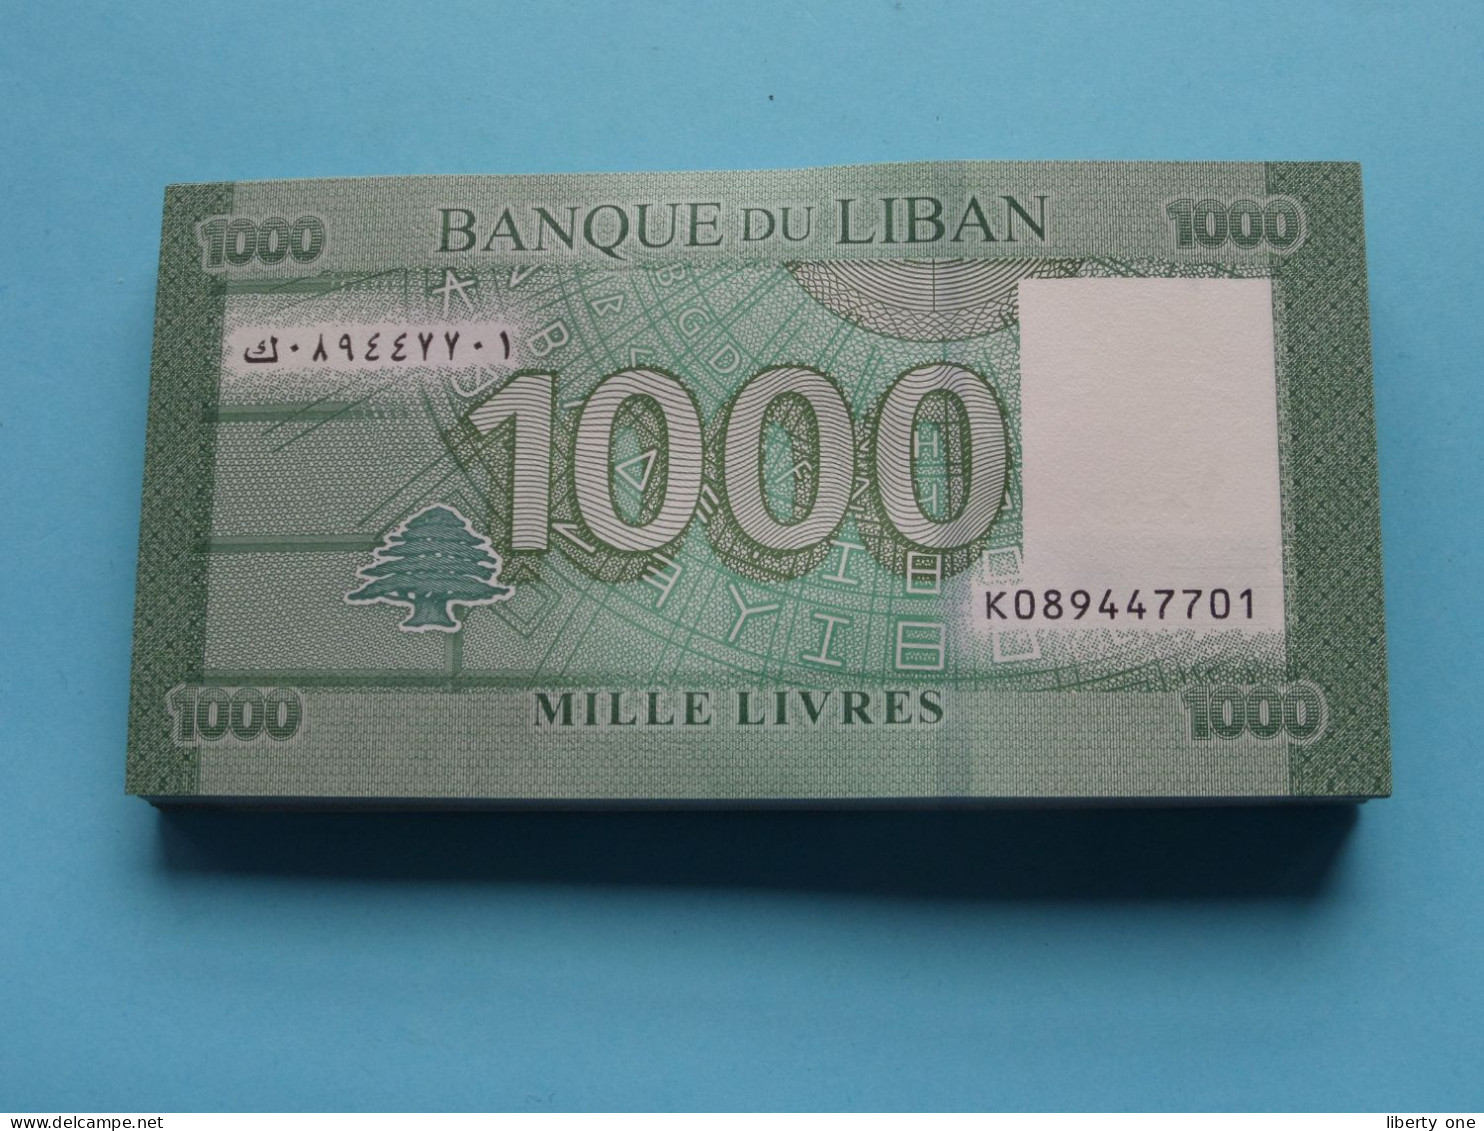 1000 Livres Mille ( Banque De Liban ) Lebanon 2016 ( For Grade, Please See SCANS ) UNC ! - Liban